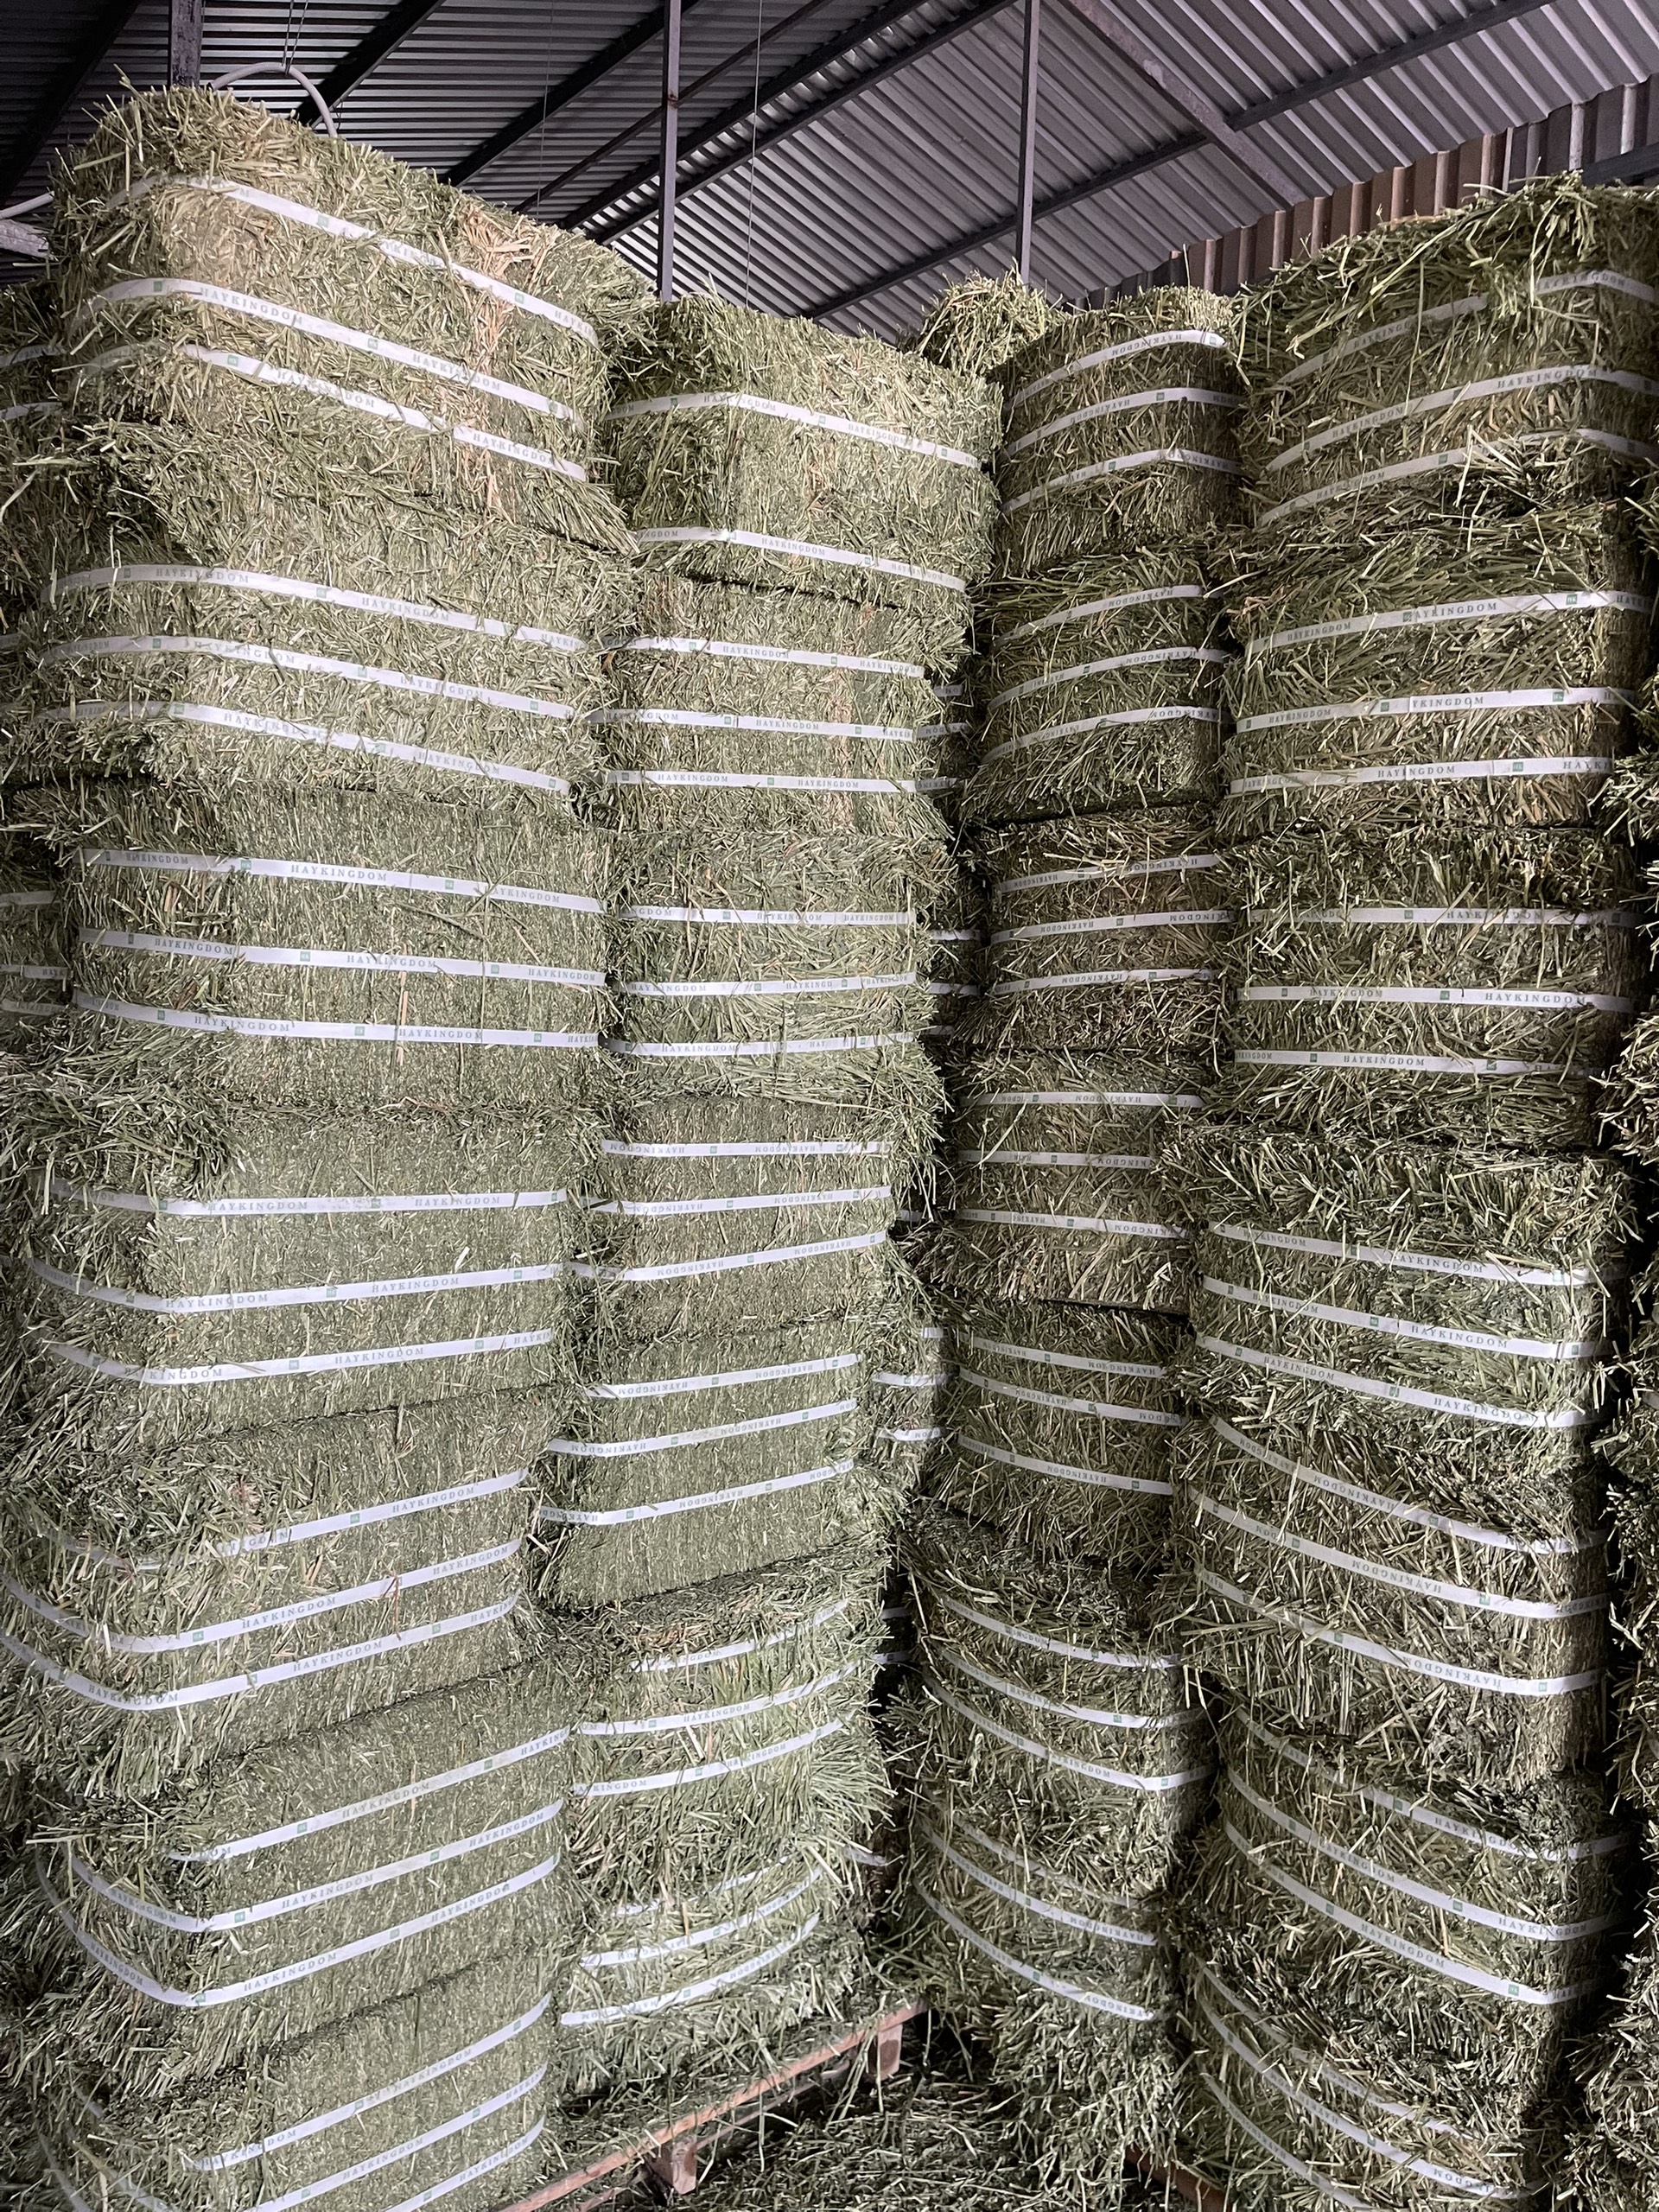 Công ty chúng tôi luôn là đơn vị uy tín để mua cỏ khô alfalfa tại Việt Nam